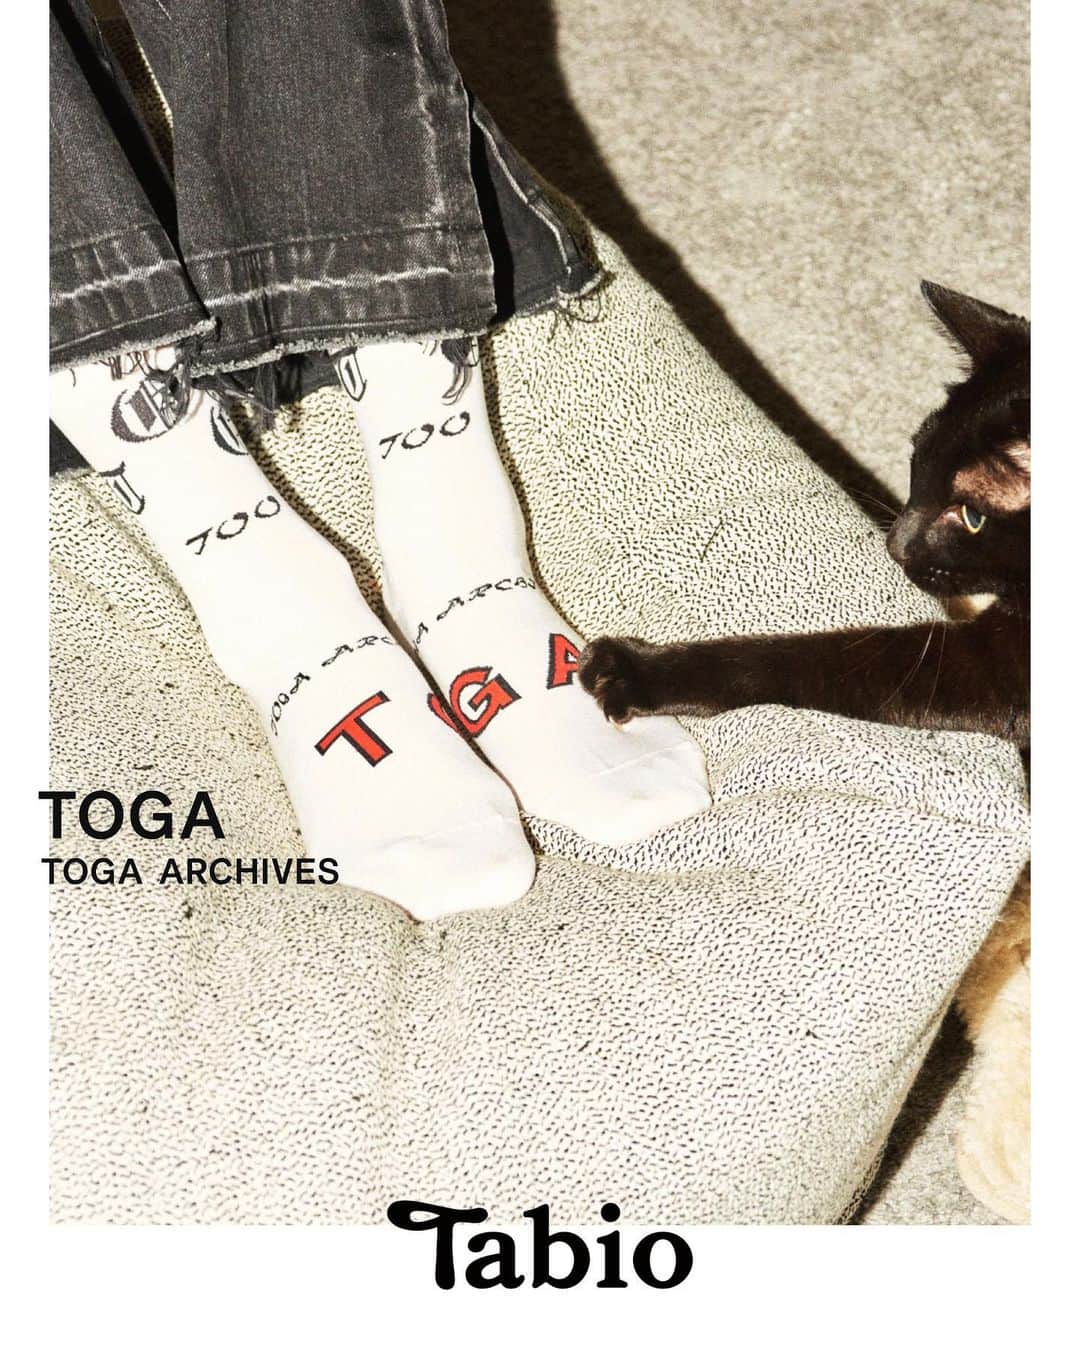 靴下屋公式アカウント（tabio）のインスタグラム：「. TOGA × Tabio limited socks  2023.11.17 Fri Release ⁡ ファッションデザイナー古田泰子が手がける 日本のファッションブランド「TOGA」と コラボレーションした靴下の第四弾を 11 月 17日(金)から発売します。 今回は足底にTOGAのロゴがデザインされた 人気のシアーシリーズや、同系色でまとめた ハイゲージのフラワーパターンなど4種類のデザイン展開です。これまで同様、スペシャルパ ッケージに入っているので ホリデーシーズンのギフトや自分へのプレゼントにも ぴったりです。 ⁡ 【販売店舗】 ・Tabio公式オンラインストア ・TabioJapanGINZASIX ・Tabio表参道ヒルズ  ・Tabio六本木ヒルズ ・Tabio NEWoMan横浜 ・Tabioアトレ品川 ・Tabio玉川高島屋S.C ・Tabioジェイアール名古屋高島屋 ・Tabio名古屋ラシック ・Tabio大丸梅田店 ・Tabio大丸神戸店 ・Tabioラシック福岡天神 ⁡ @togaarchives @togaarchives_online ⁡ #tabio #tabio_official #タビオ #toga #togaarchives #トーガ #トーガアーカイブス #togatabiosocks」